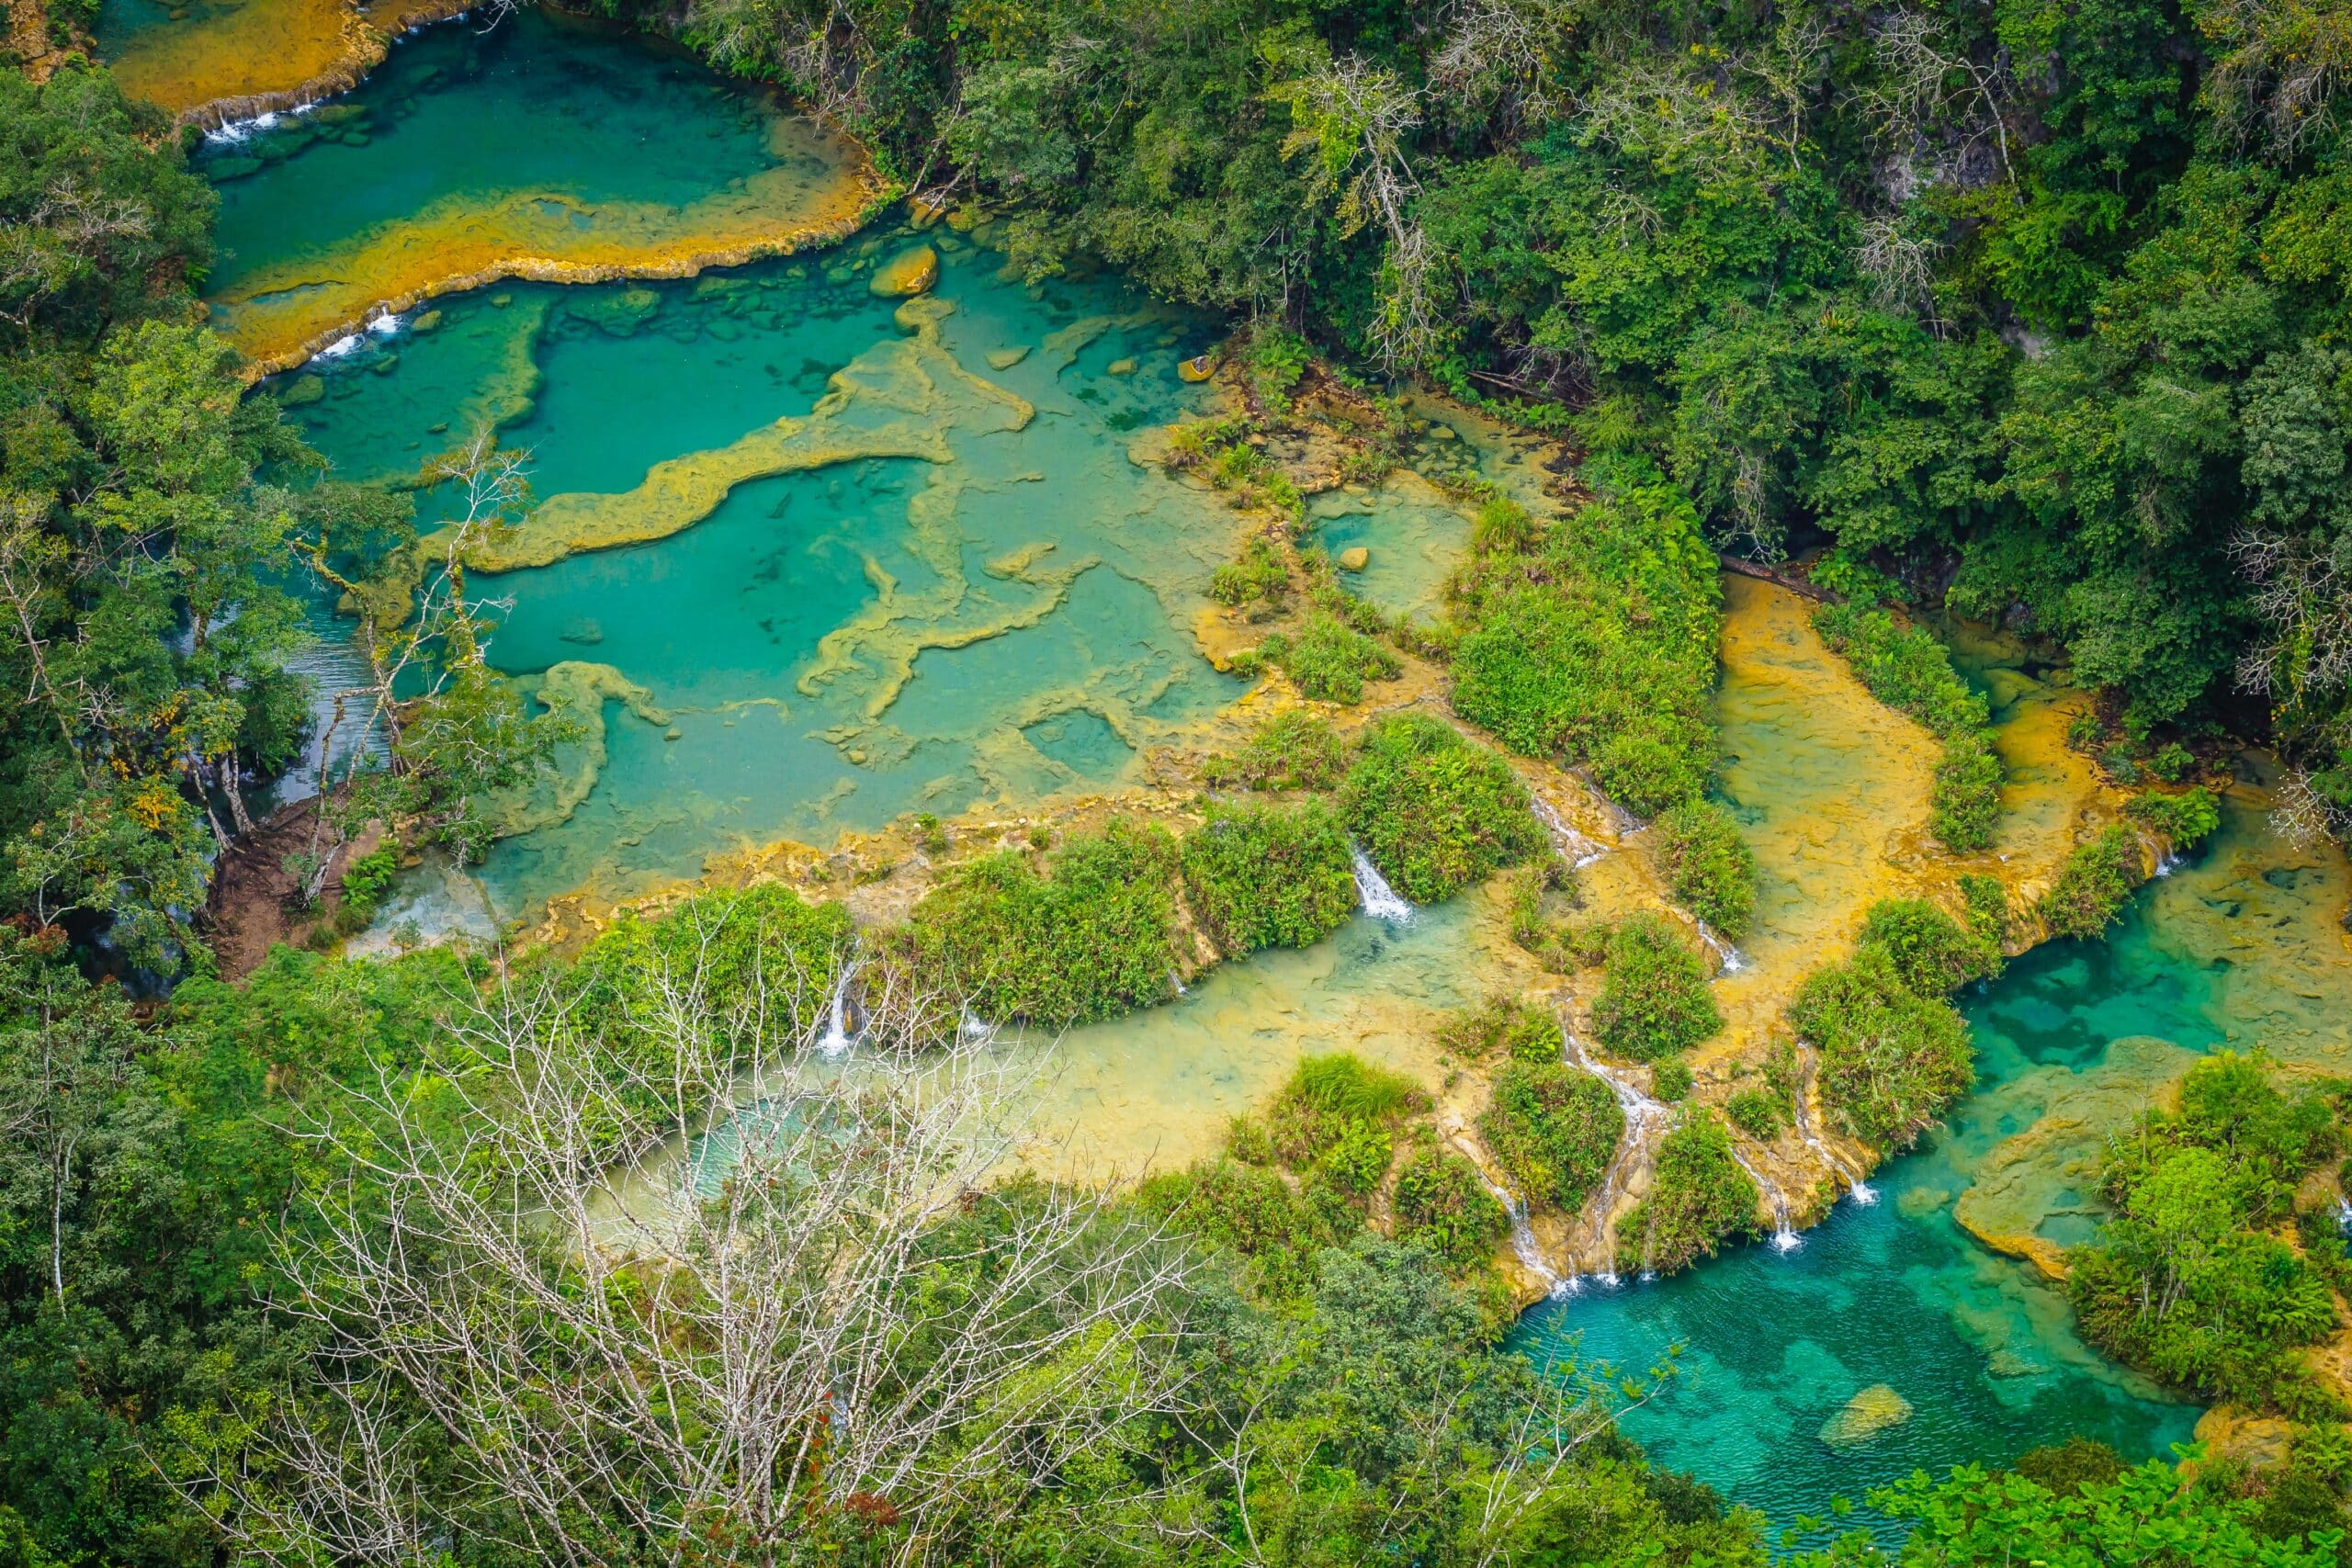 Vista de cima do Lanquen, Guatemala, de aguas azuis em meio a vegetação verde.